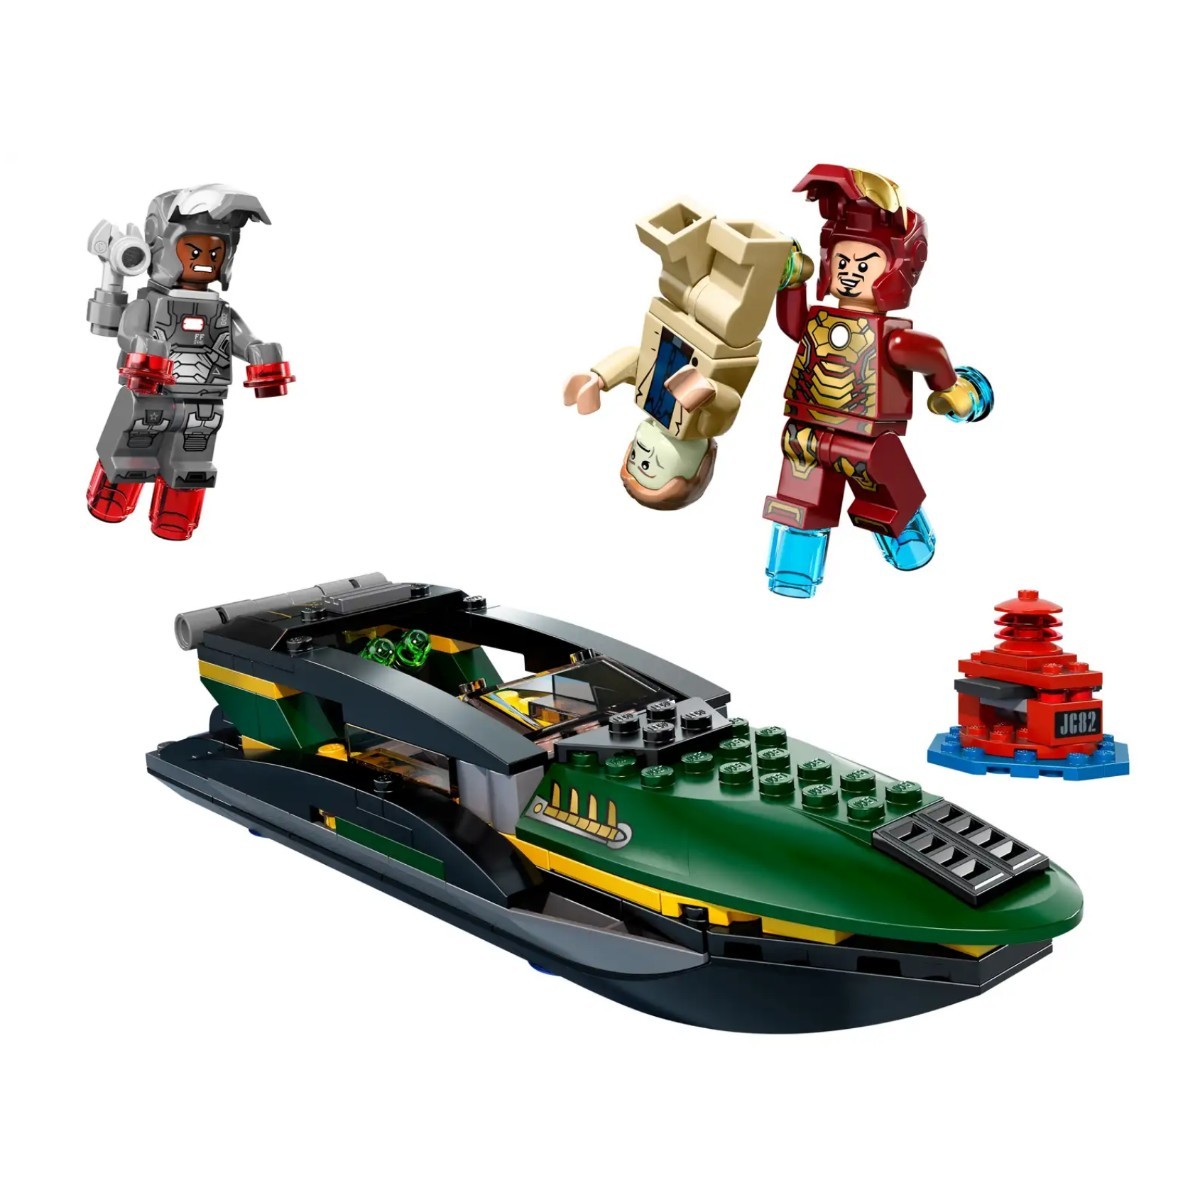  вскрыть сборка товар / Lego (LEGO)/ma- bell super герой z/ Ironman (IRONMAN)/76006/ Ironman si- порт Battle 